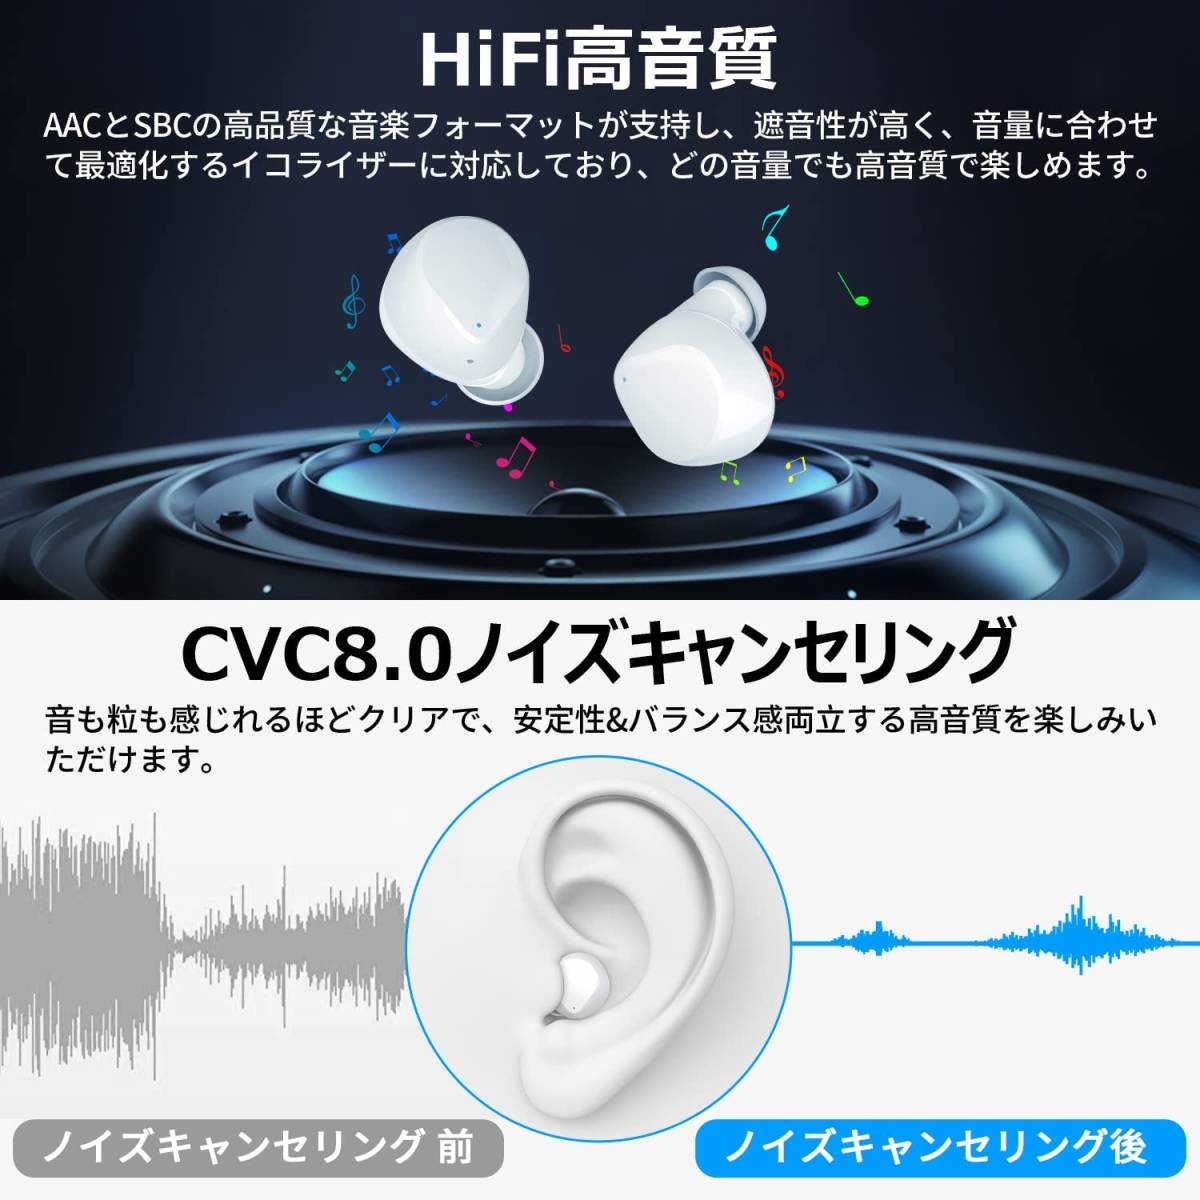 Bluetooth イヤホン ワイヤレスイヤホン 立体HIFI音質 AAC/SBC対応 CVC8.0 自動ペアリング IPX7防水 音量調整 ハンズフリー通話 マイク内蔵_画像5